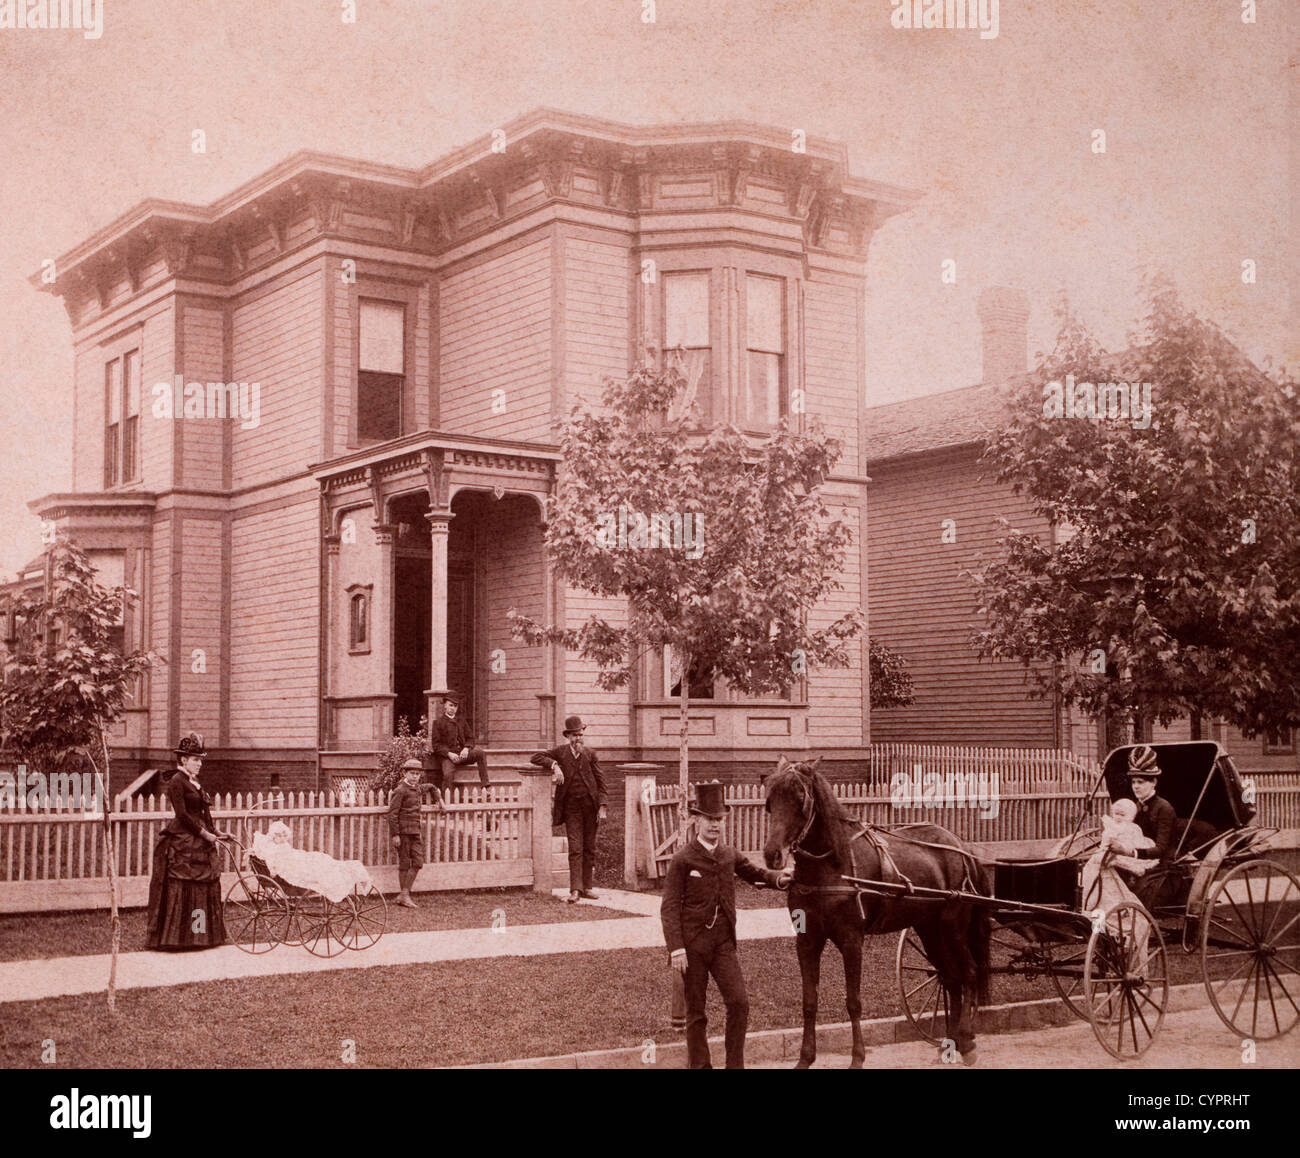 Voiture à cheval en face de Stately Home, France, vers 1900 Banque D'Images